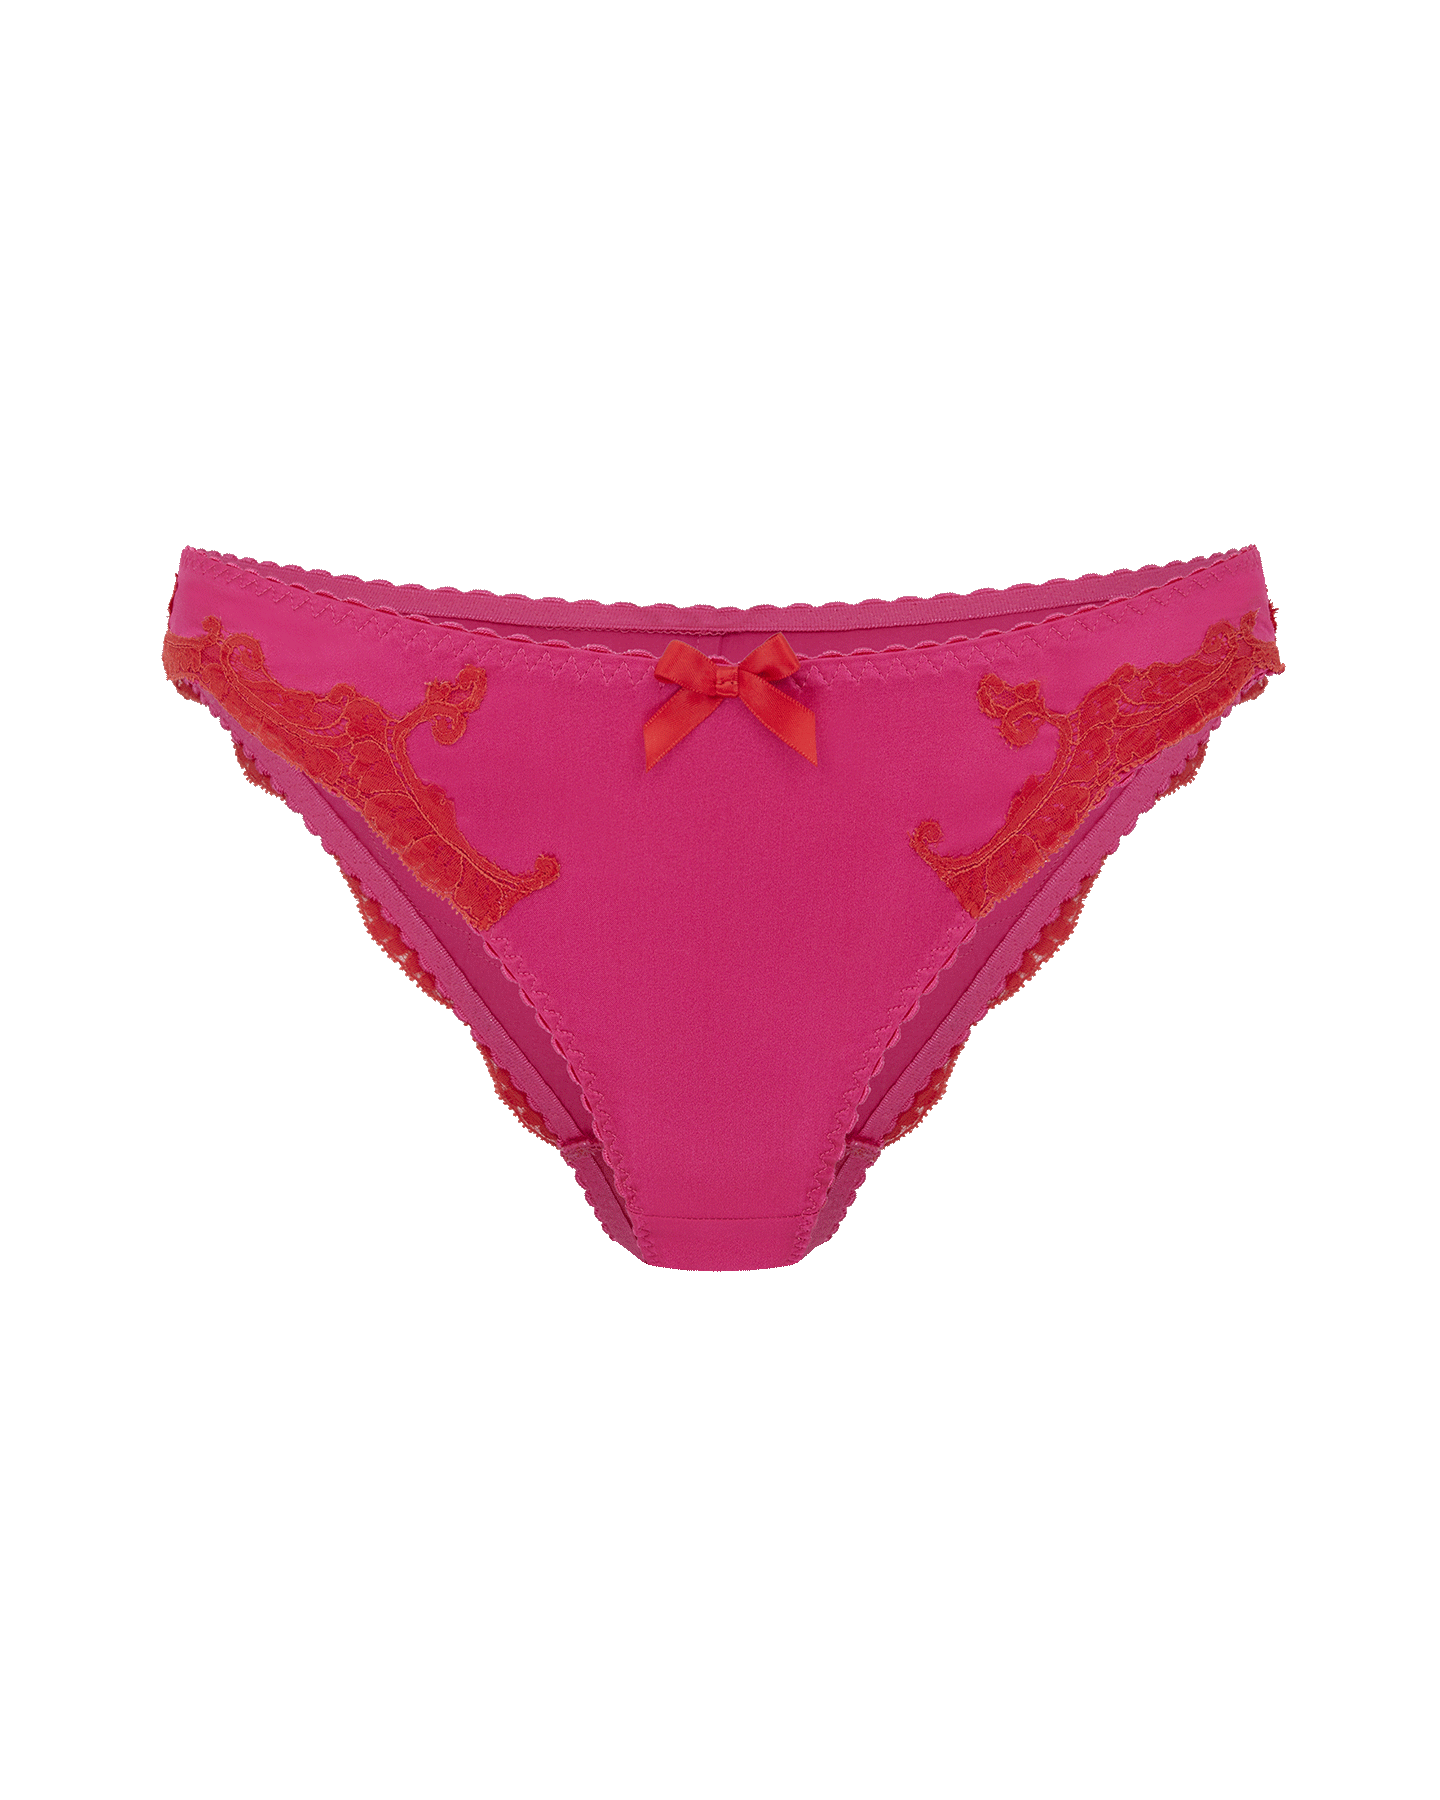 VBFOFBV Women's Underwear, Briefs for Women, Summer Ice Cream